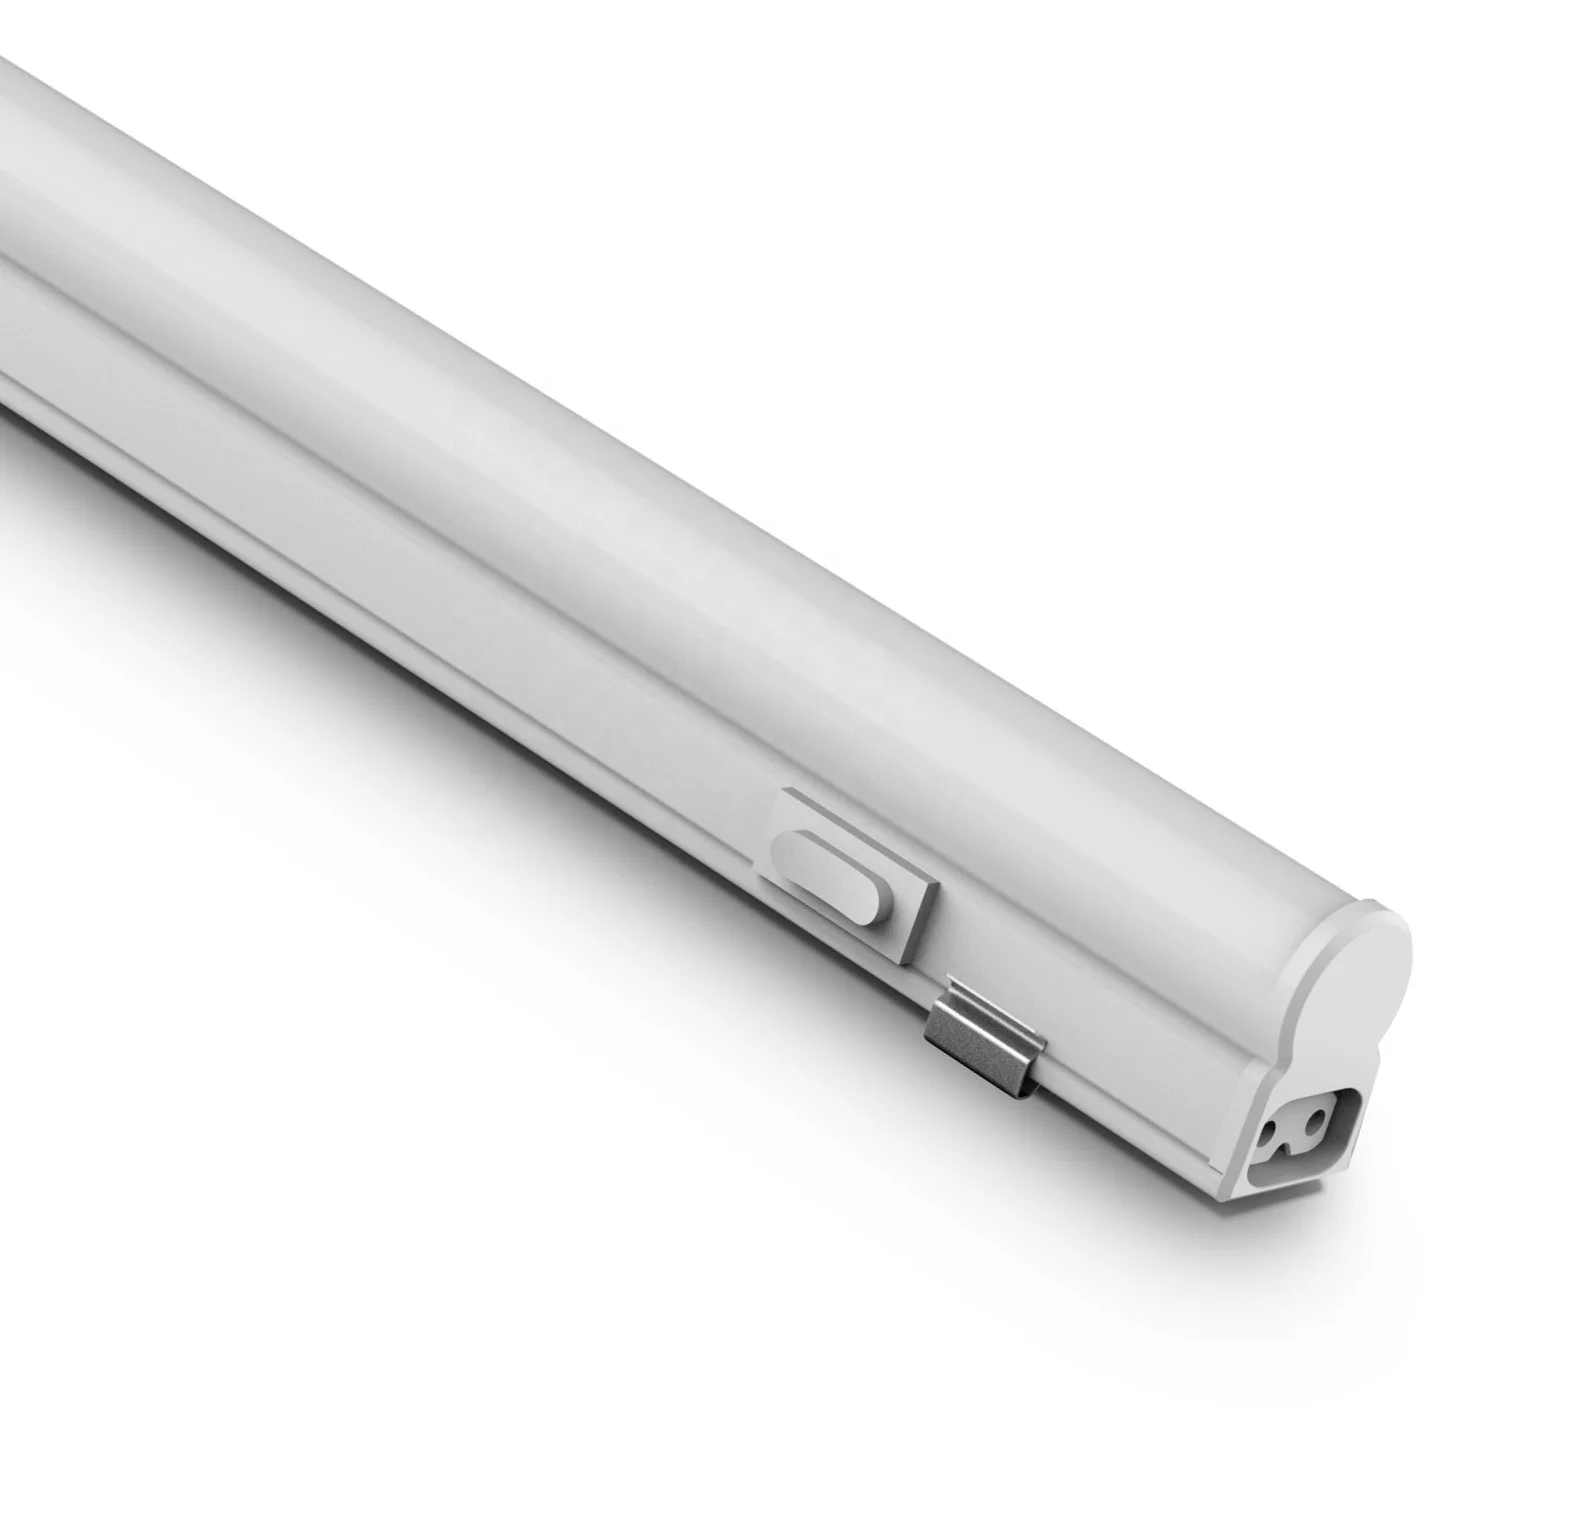 New slim design IP20 100lm/w led batten fitting  led linear lighting t5